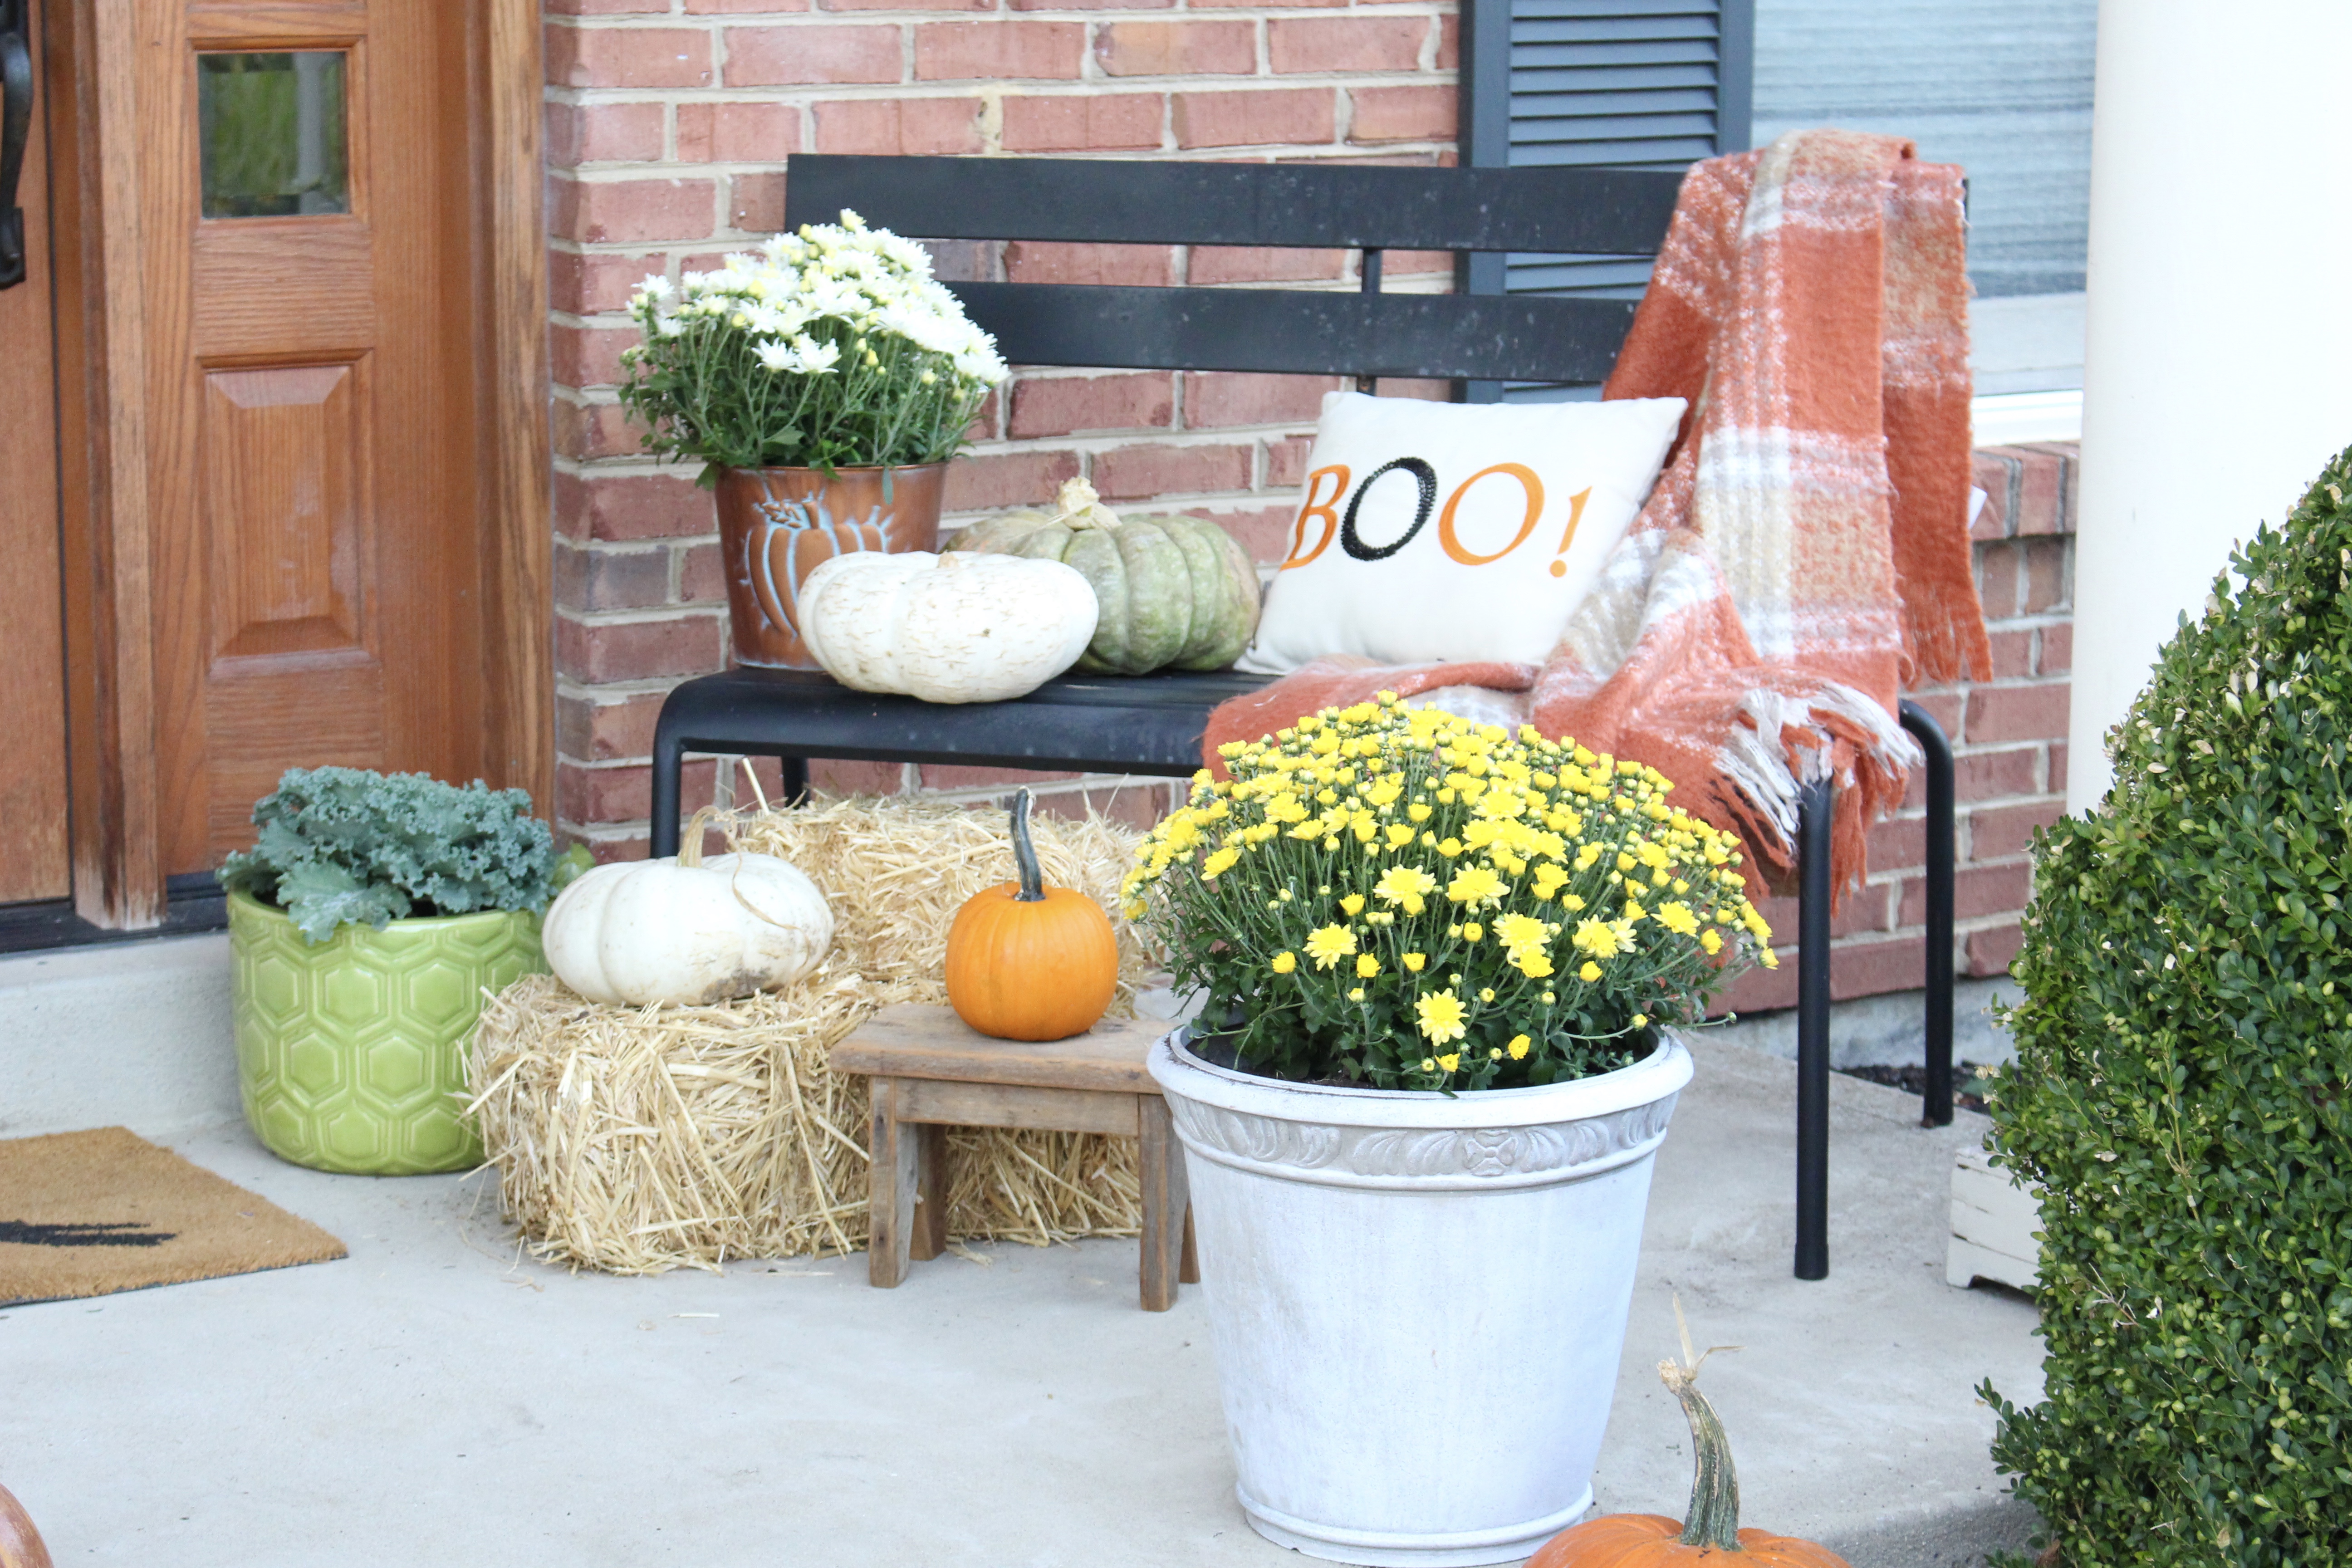 Fall Porch Ideas- Harvest outdoor decor- Decorating for fall- Fall porch- Autumn- Outdoor decor- decorating outdoors for fall- porch- seasonal outdoor decor- pumpkins- mums- Halloween front porch